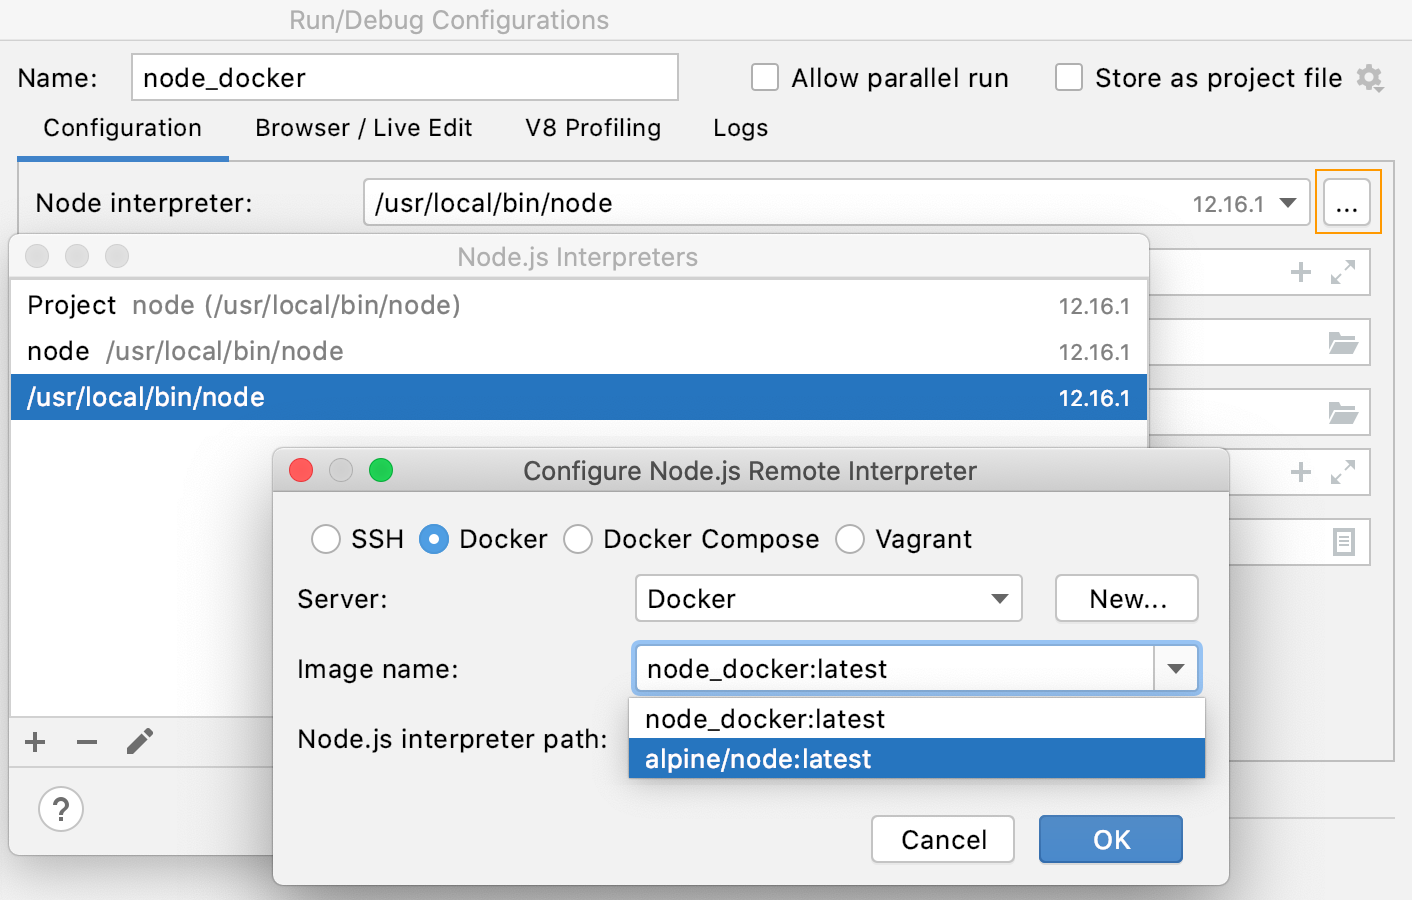 Open the Node.js Interpreters dialog from Node.js run configuration